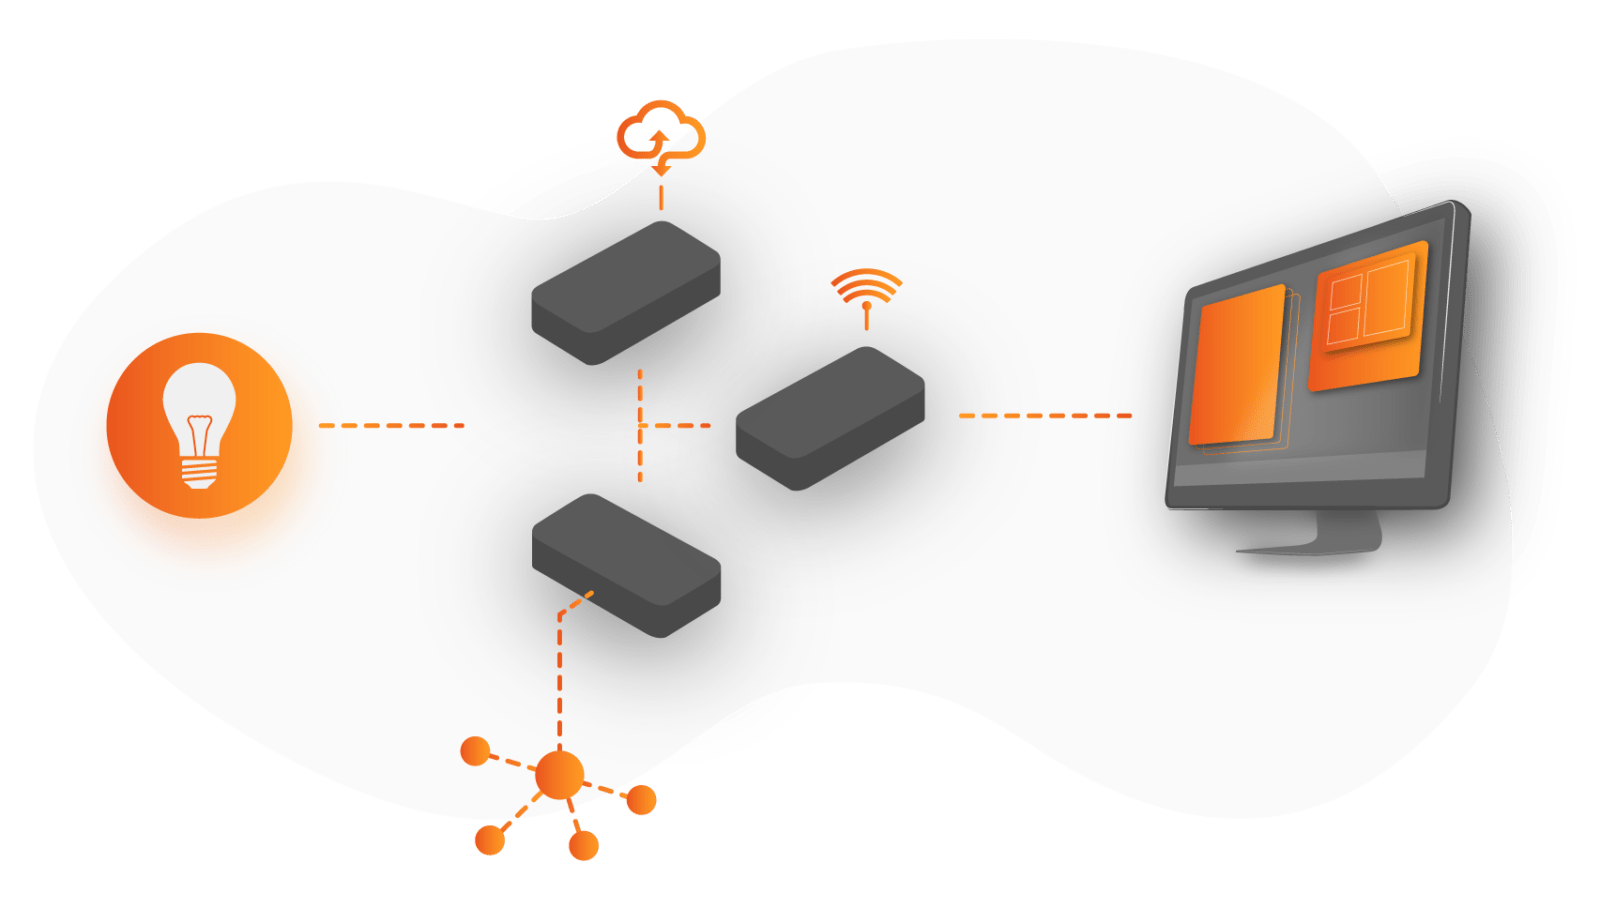 Grafisk illustration af et IoT system. I den ene ende er der illustreret en lampepære i en orange cirkel med en streg ind til 3 bokse som repræsentere skyen, netværk og databaser, fra dem går der en orange streg hen til en computer som repræsentere den applikation data bliver vist på